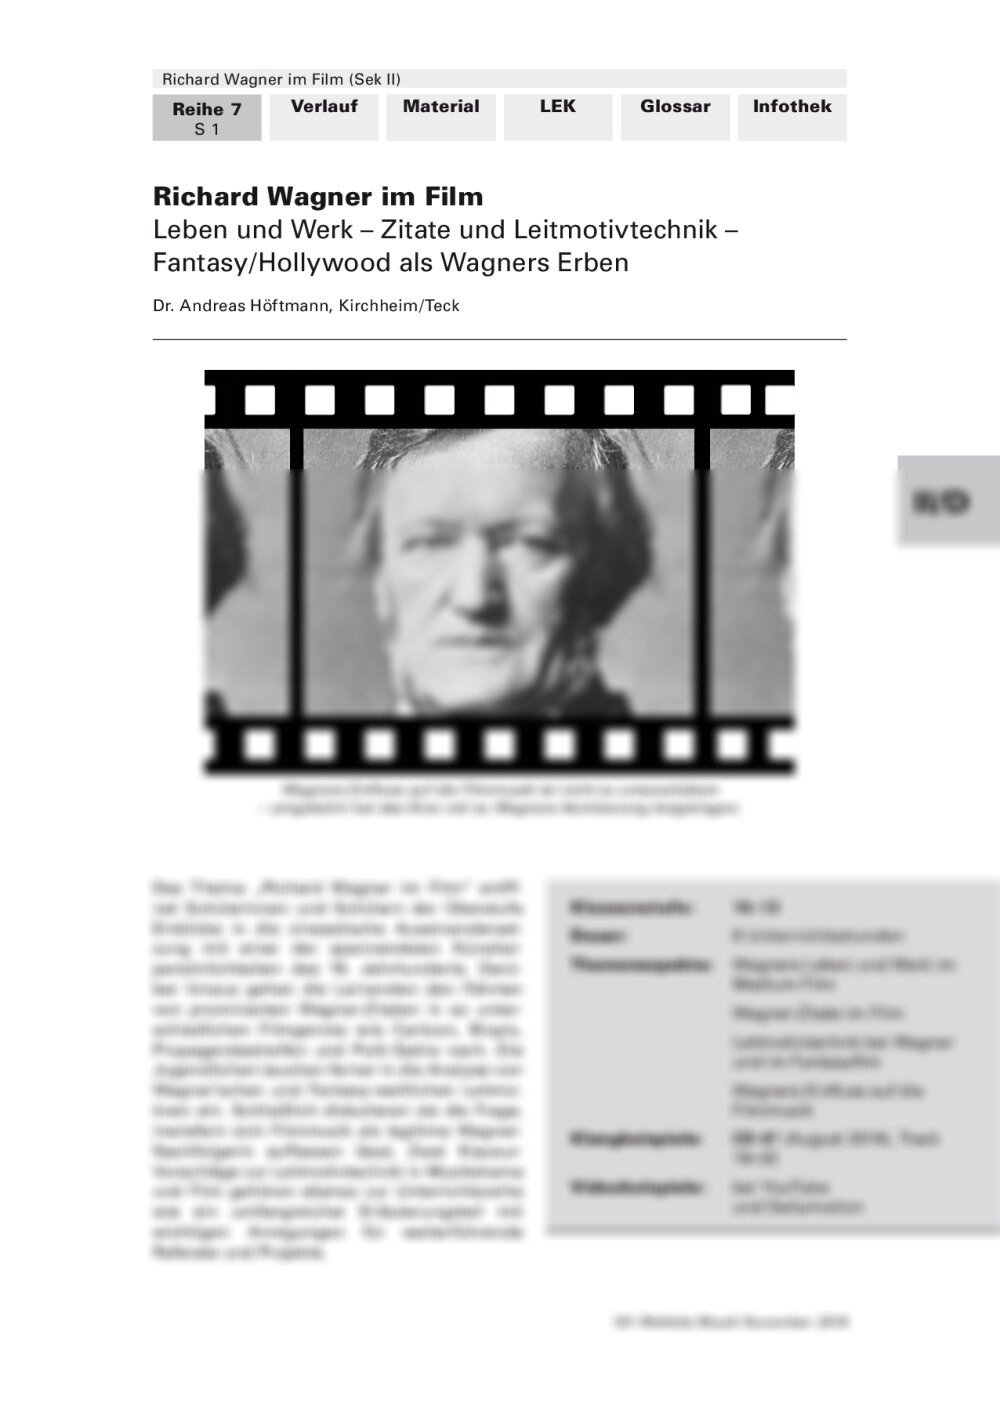 Richard Wagner im Film - Seite 1